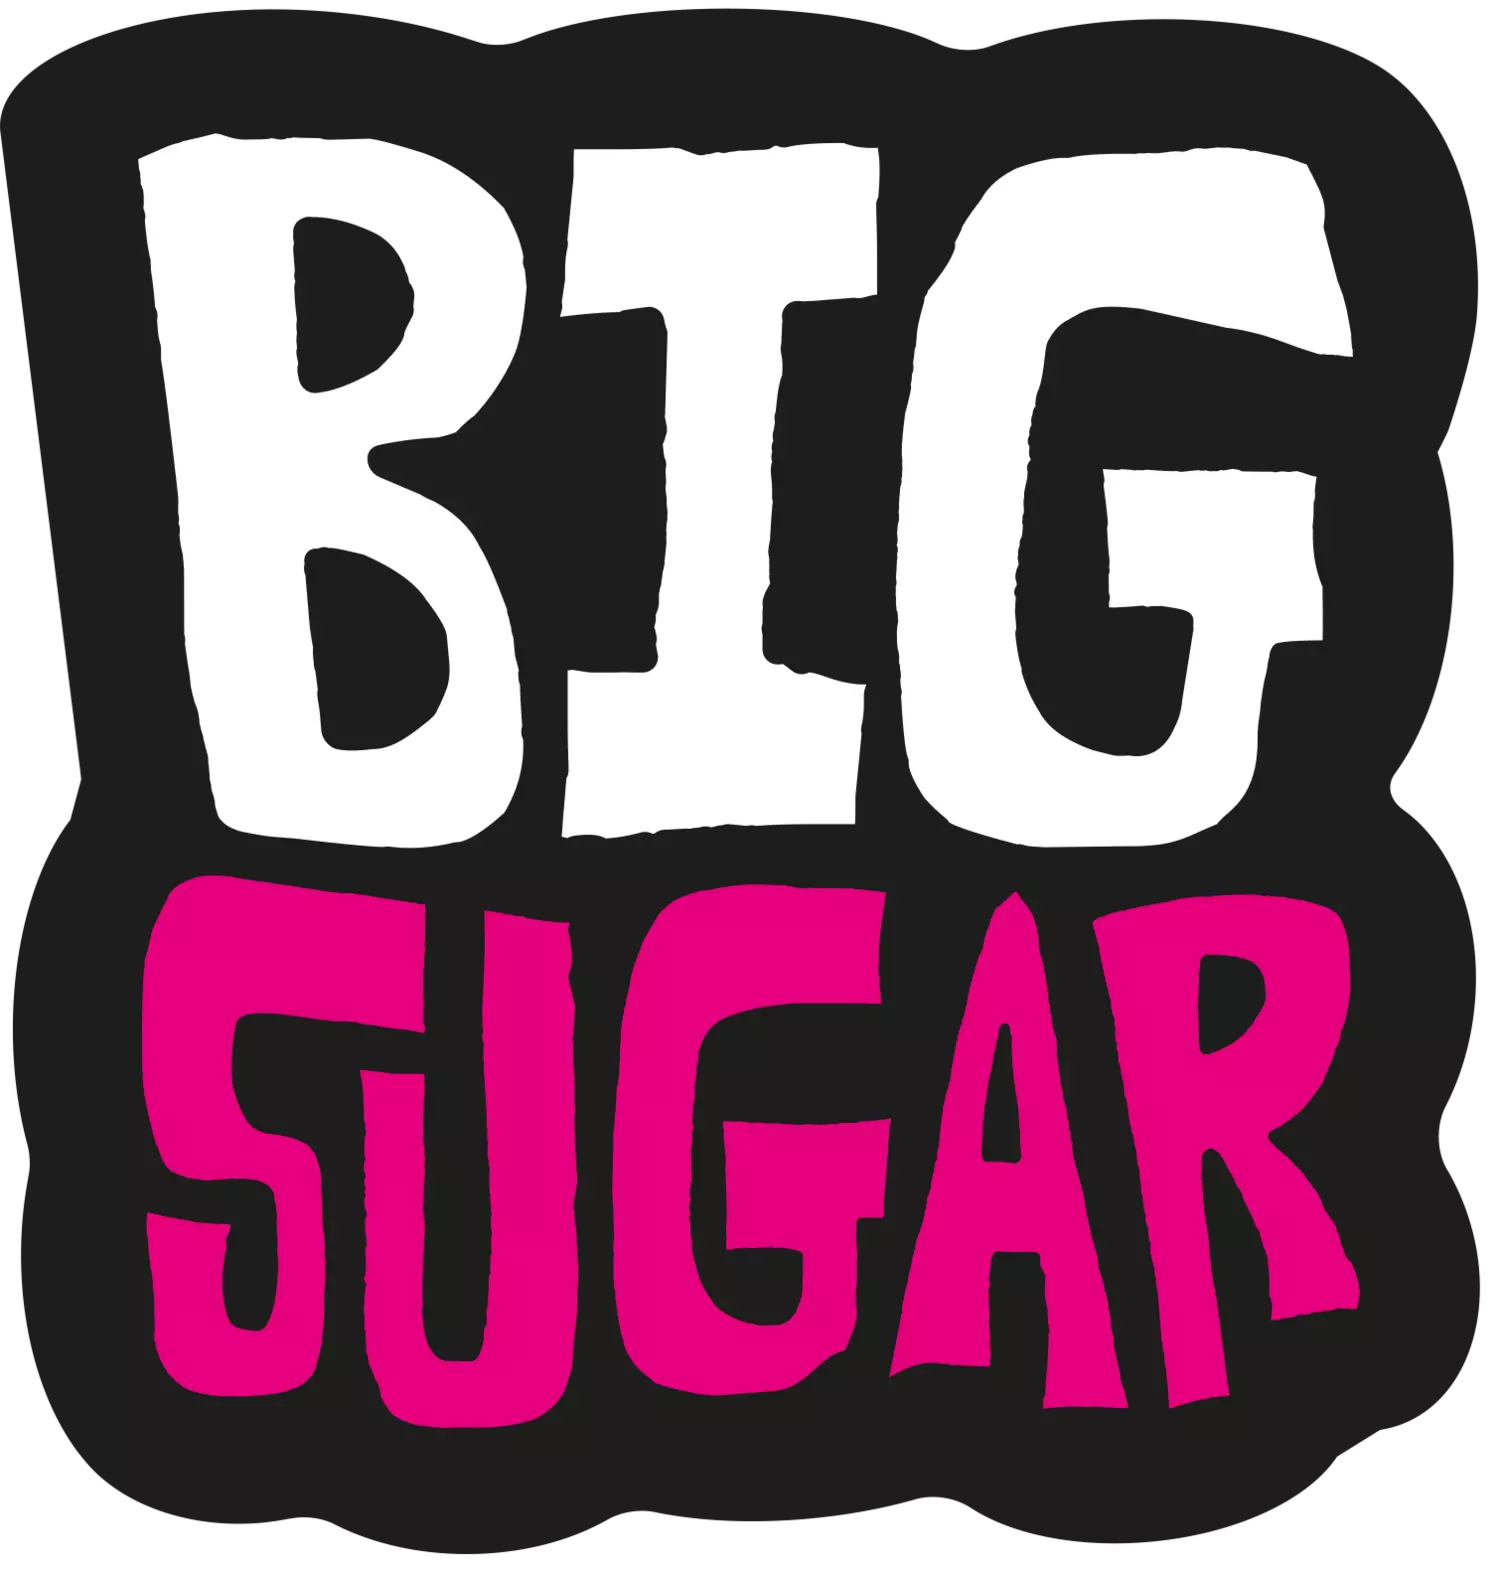 Big Sugar - новый издатель, который делает то, что хочет.